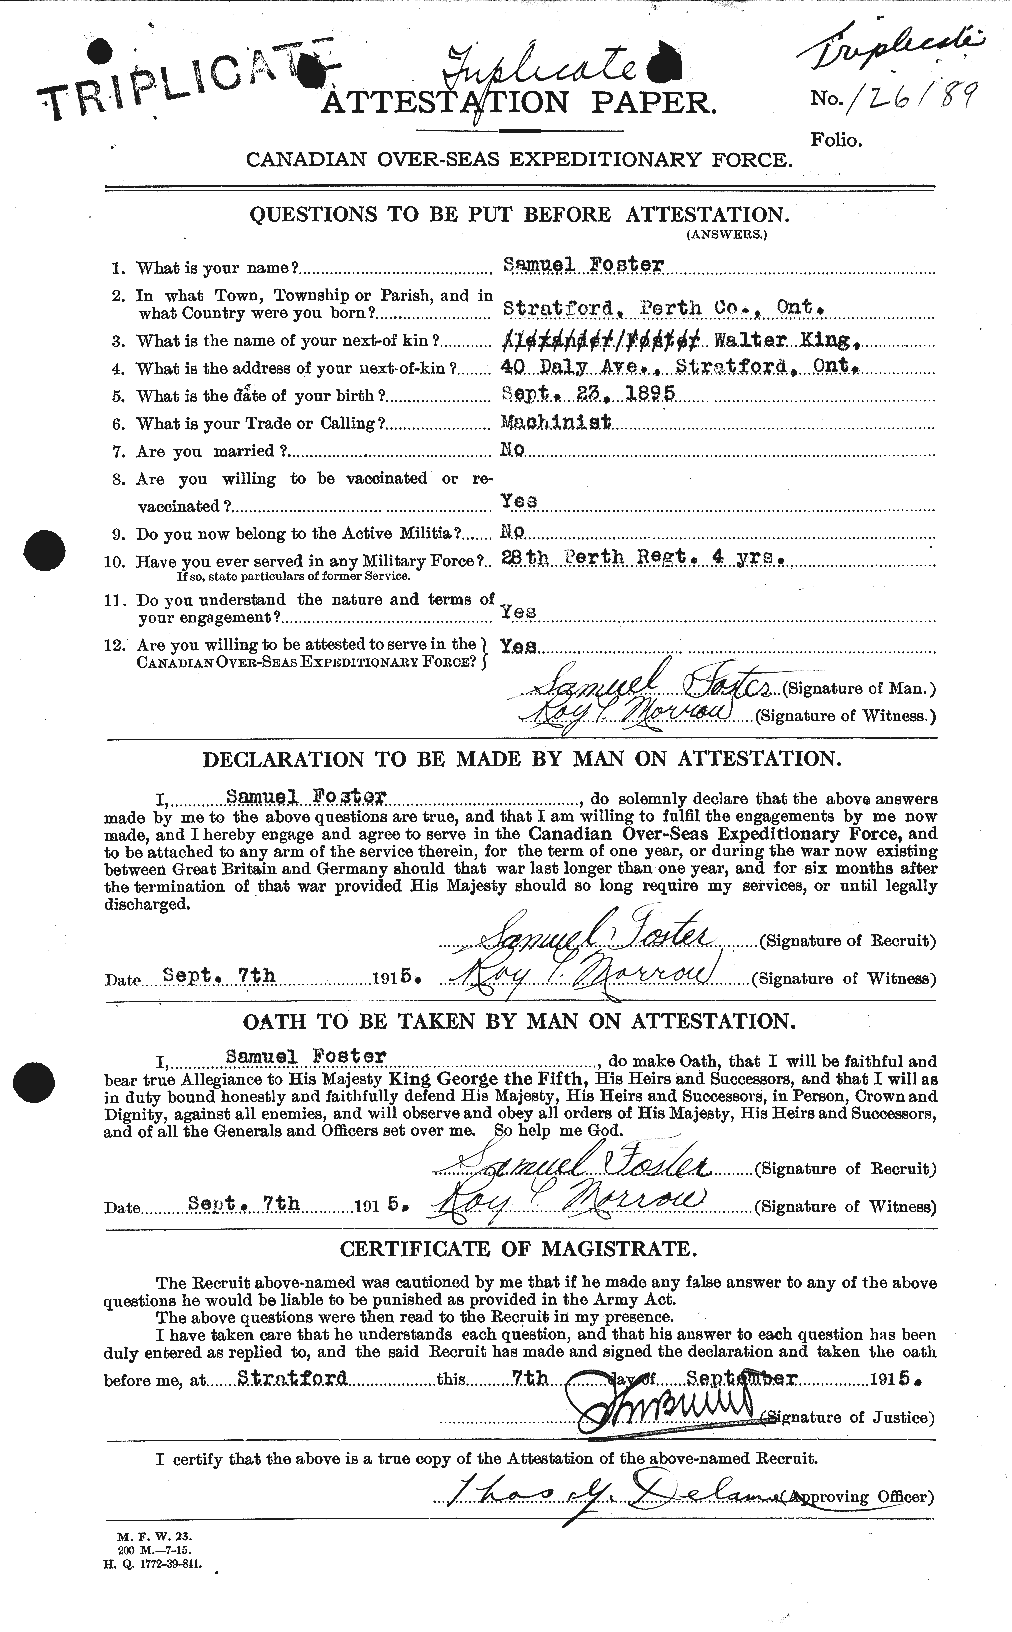 Dossiers du Personnel de la Première Guerre mondiale - CEC 335203a